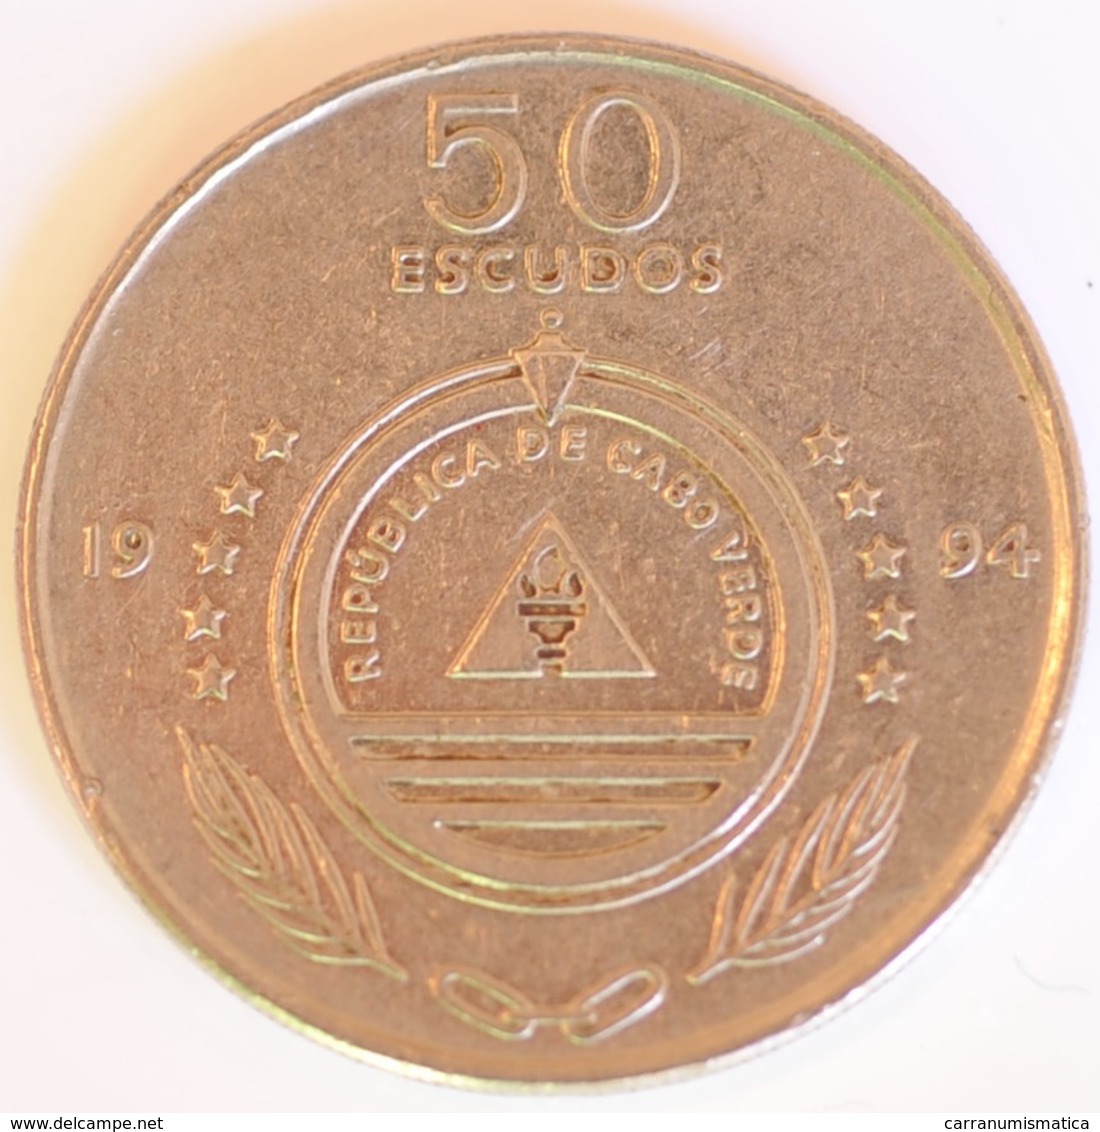 CAPO VERDE 50 ESCUDOS 1994 - Cape Verde